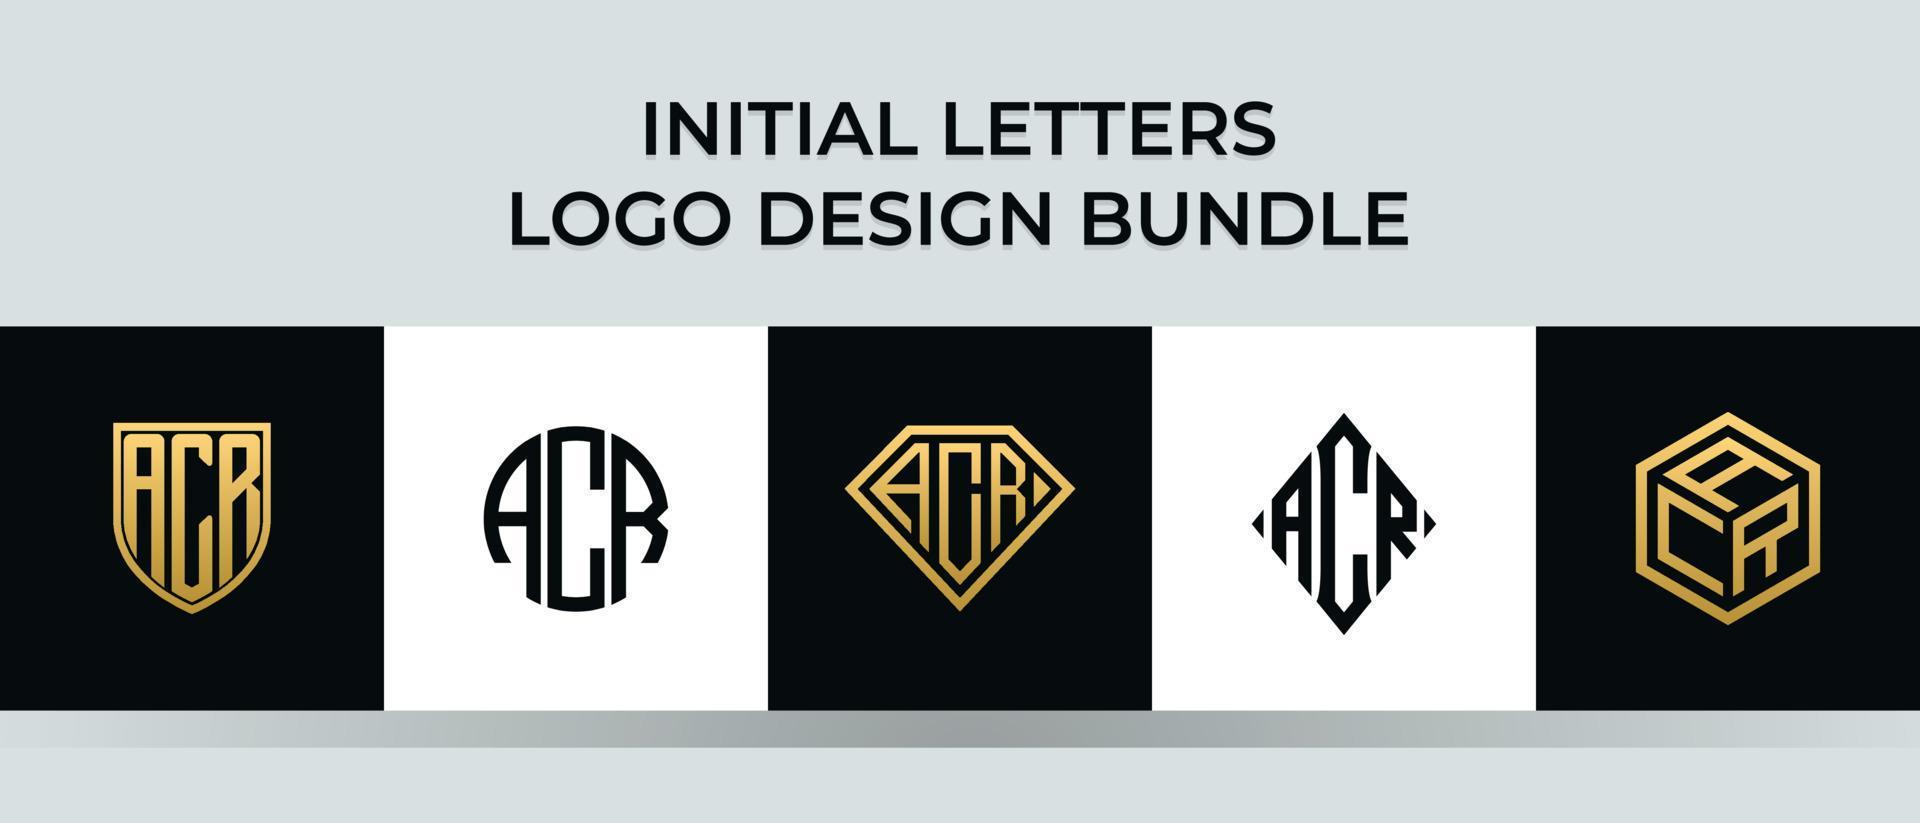 Initial letters ACR logo designs Bundle vector